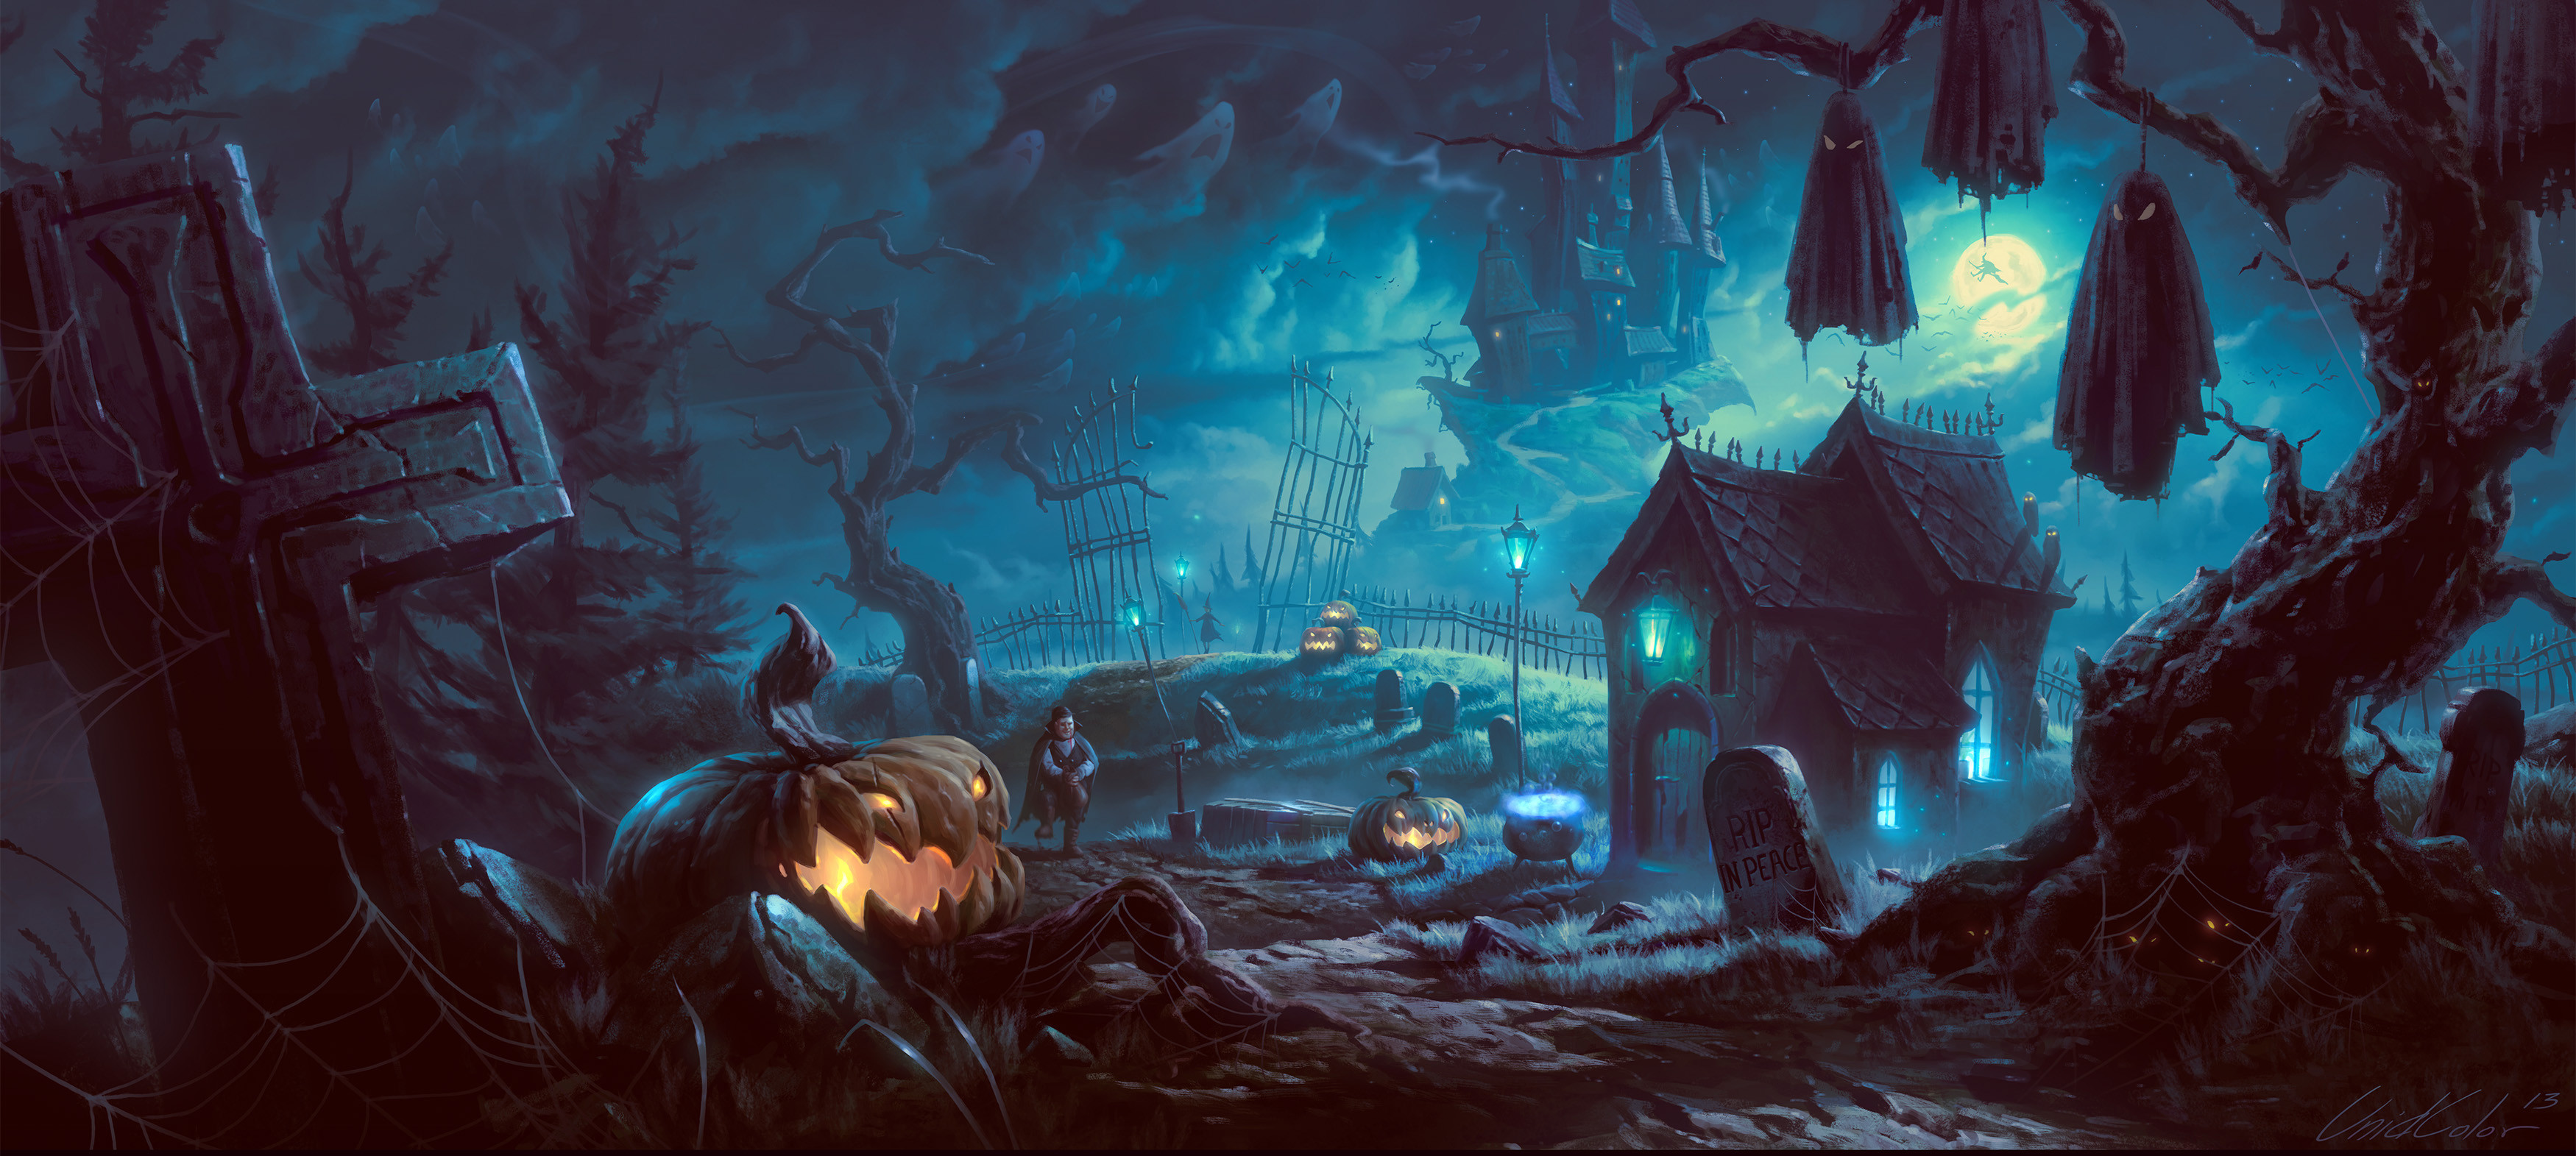 3500x1571 Scary Halloween Desktop Wallpapers - Wallpaper Cave ...